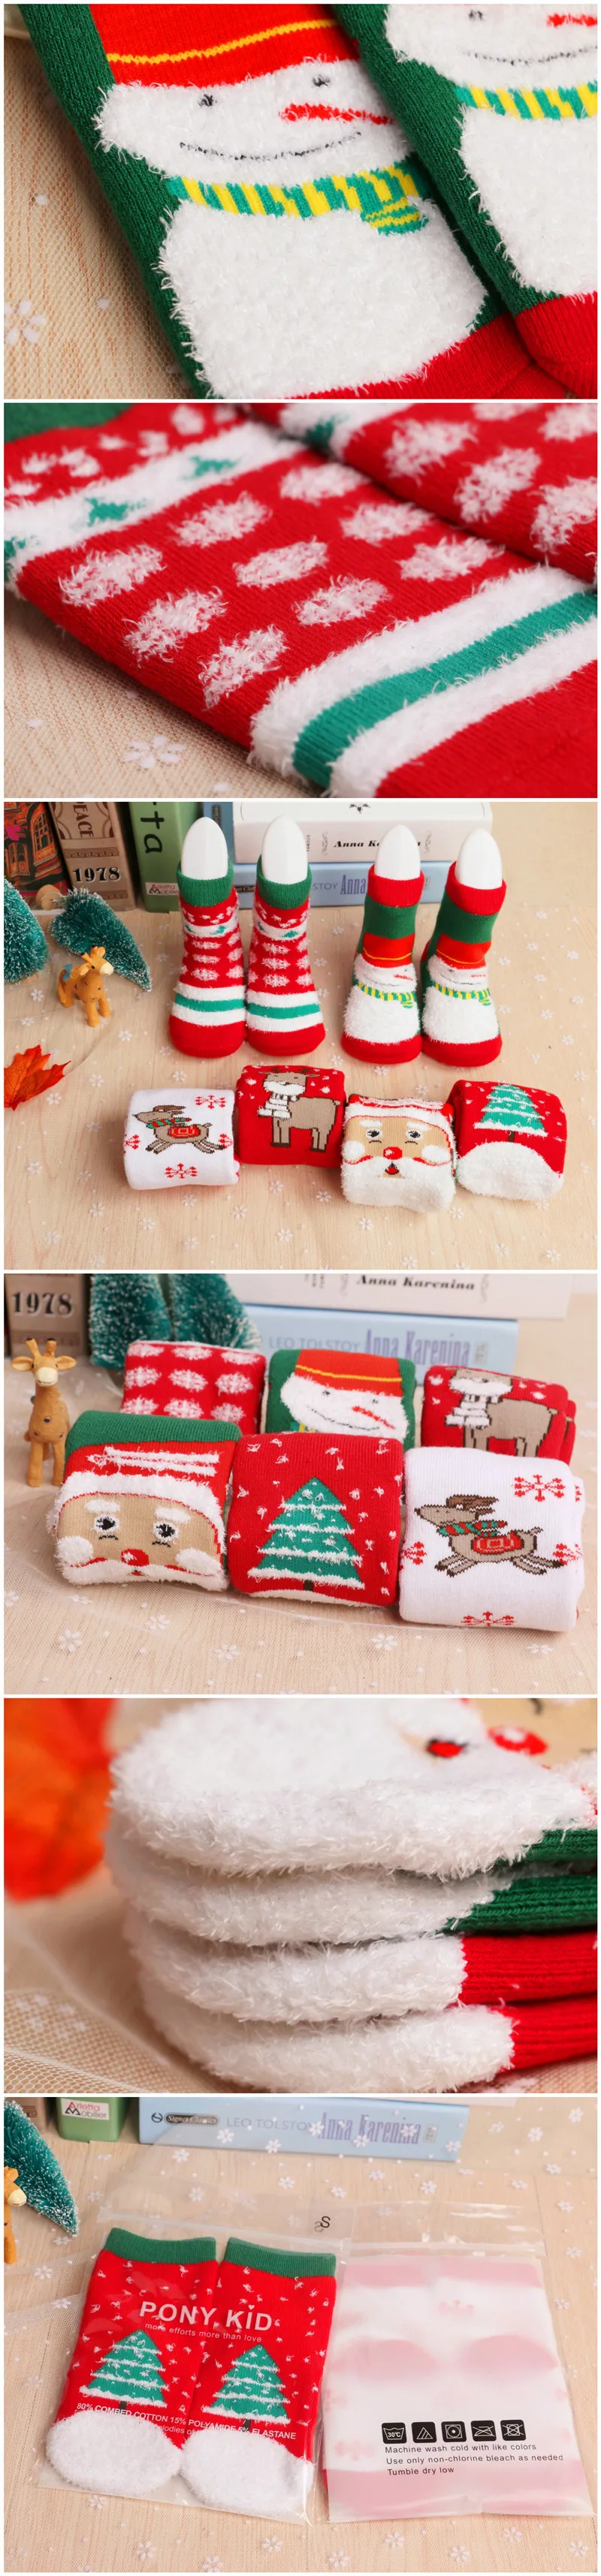 [Bosudhsou.] C41# Рождественская тематическая одежда для детей хлопковые жаккардовые носки из махровой ткани рождественские носки для малышей впитывающие пот носки